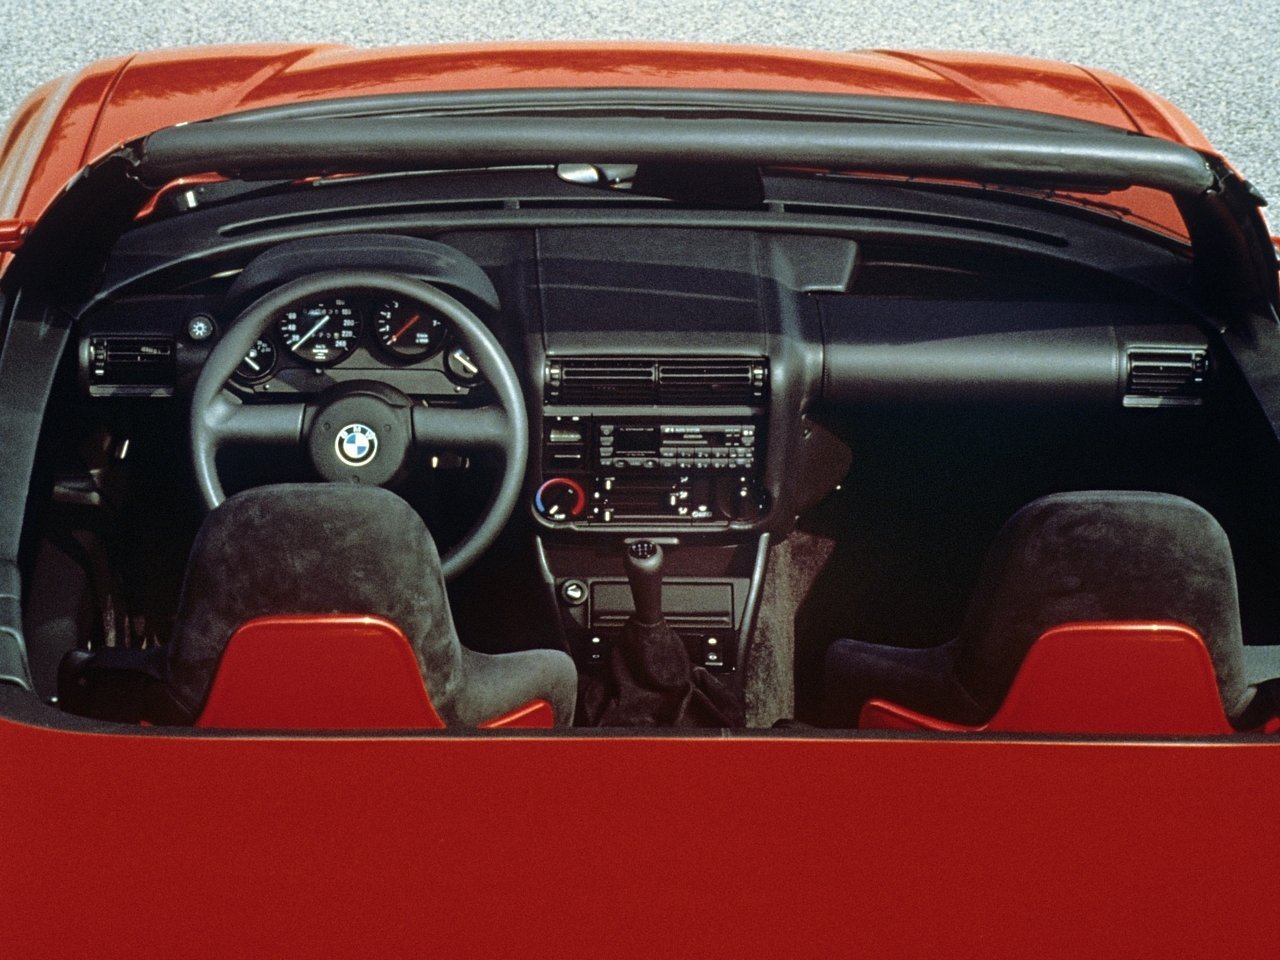 кабриолет BMW Z1 1989 - 1991г выпуска модификация 2.5 MT (170 л.с.)